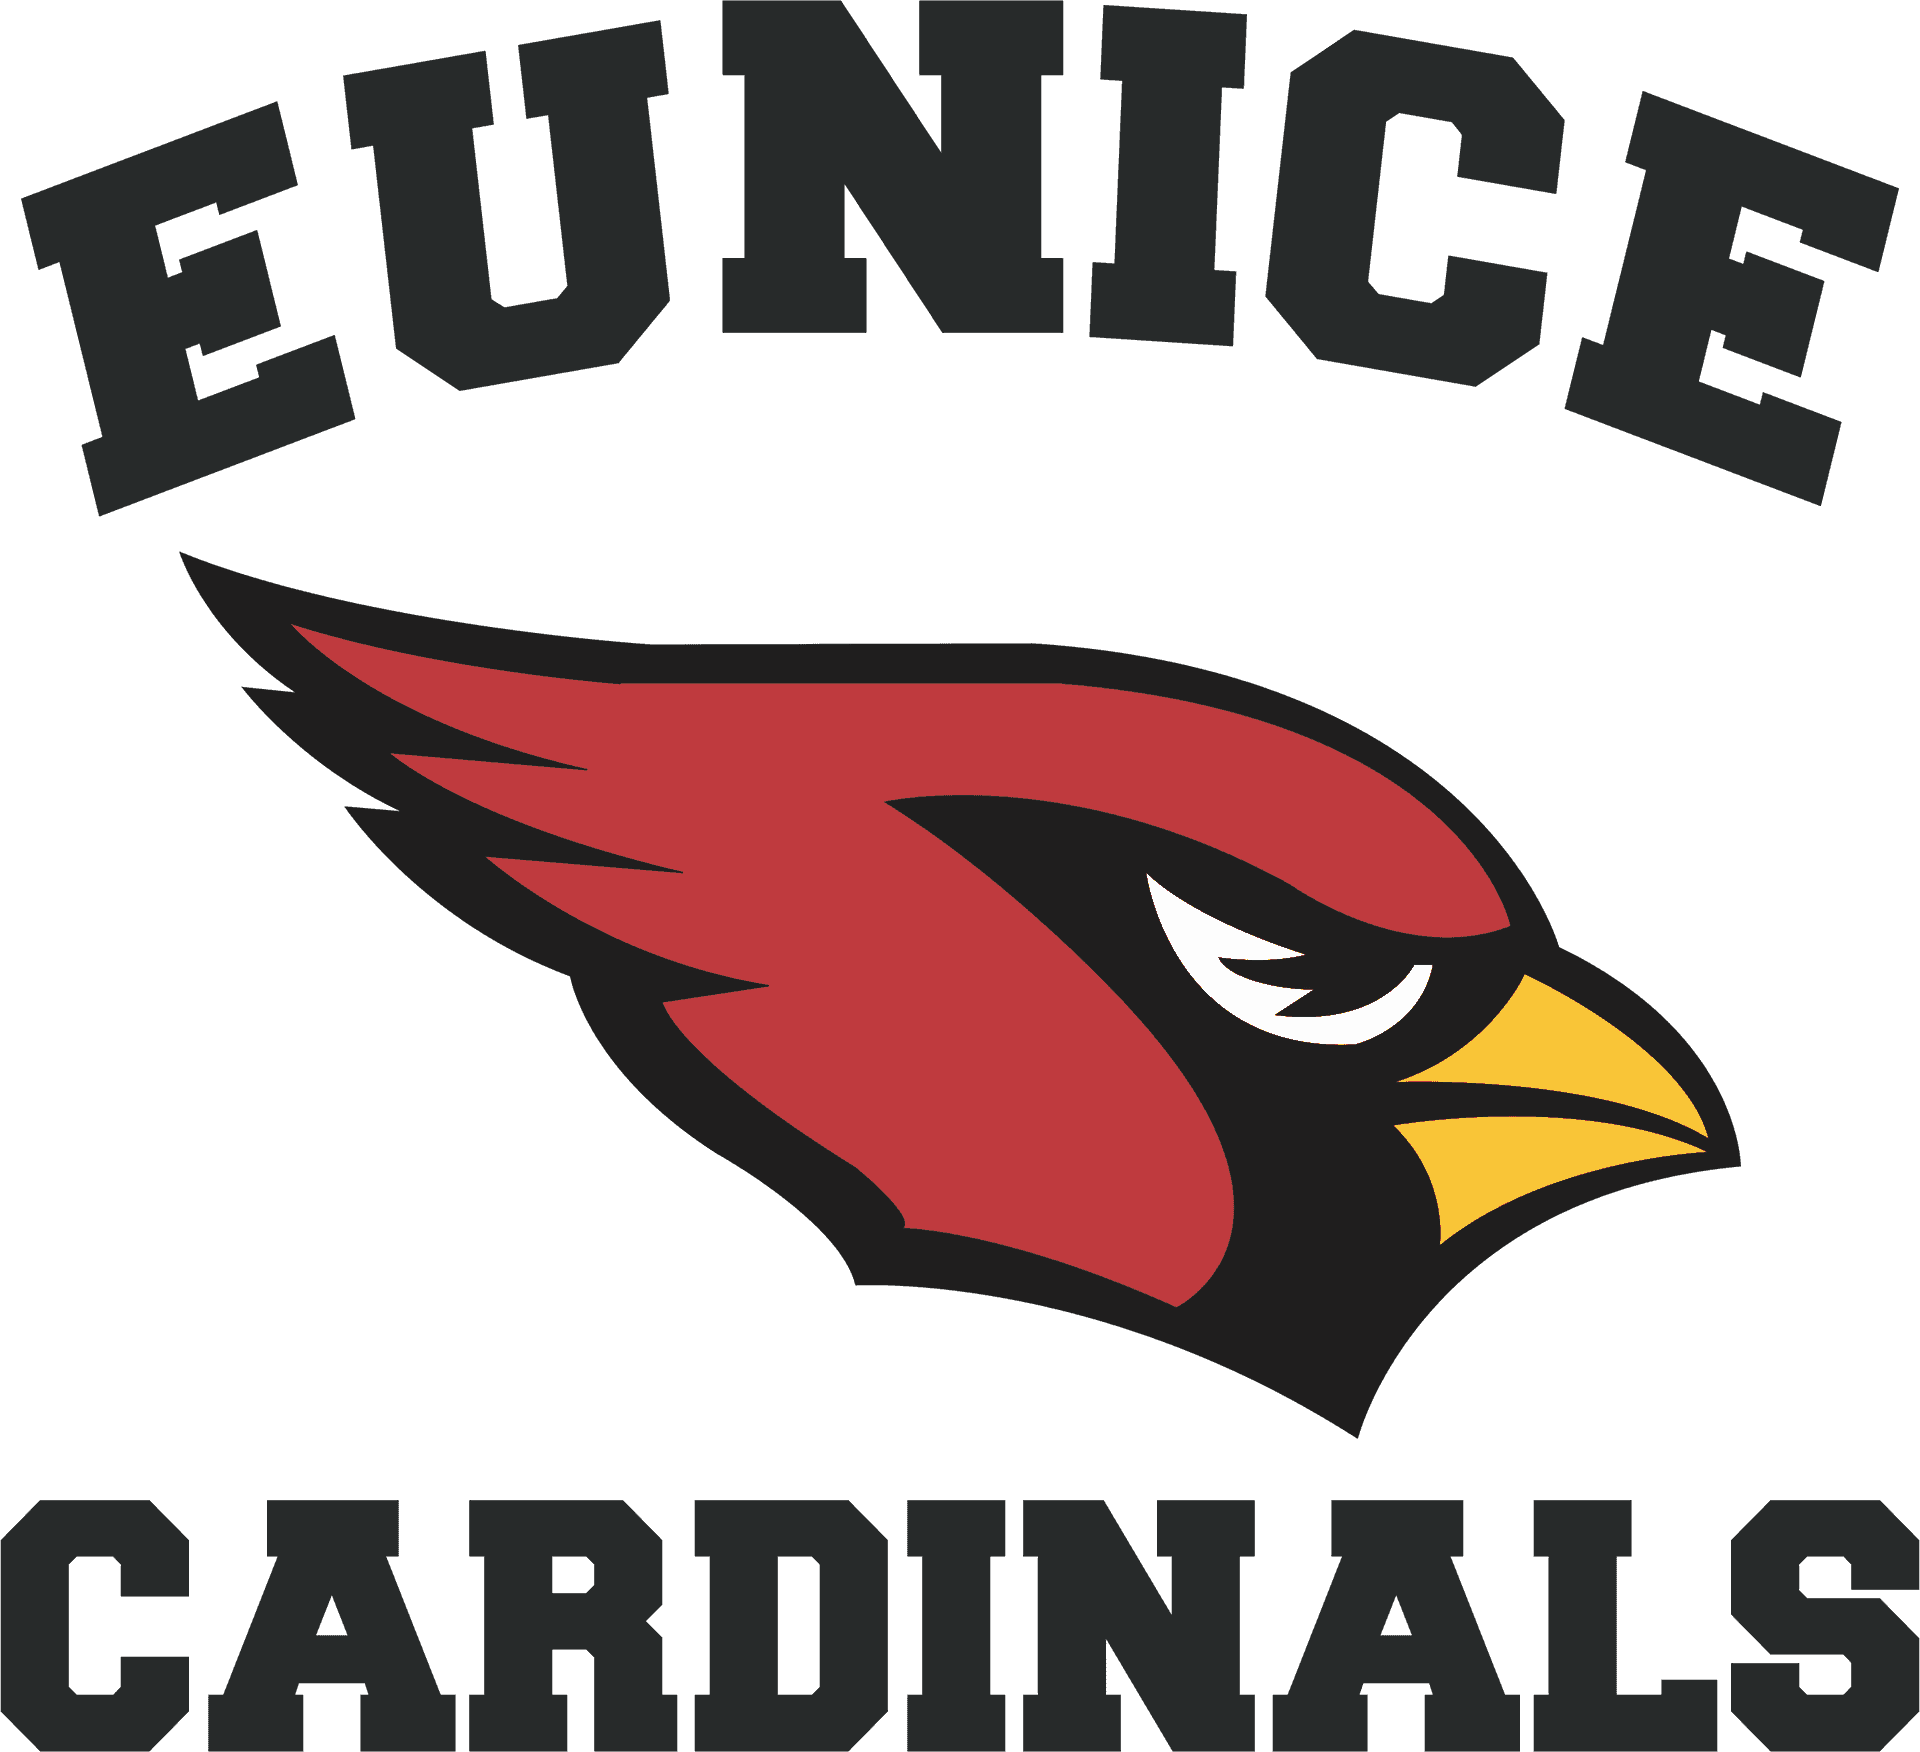 Download Eunice Cardinals Logo | Wallpapers.com